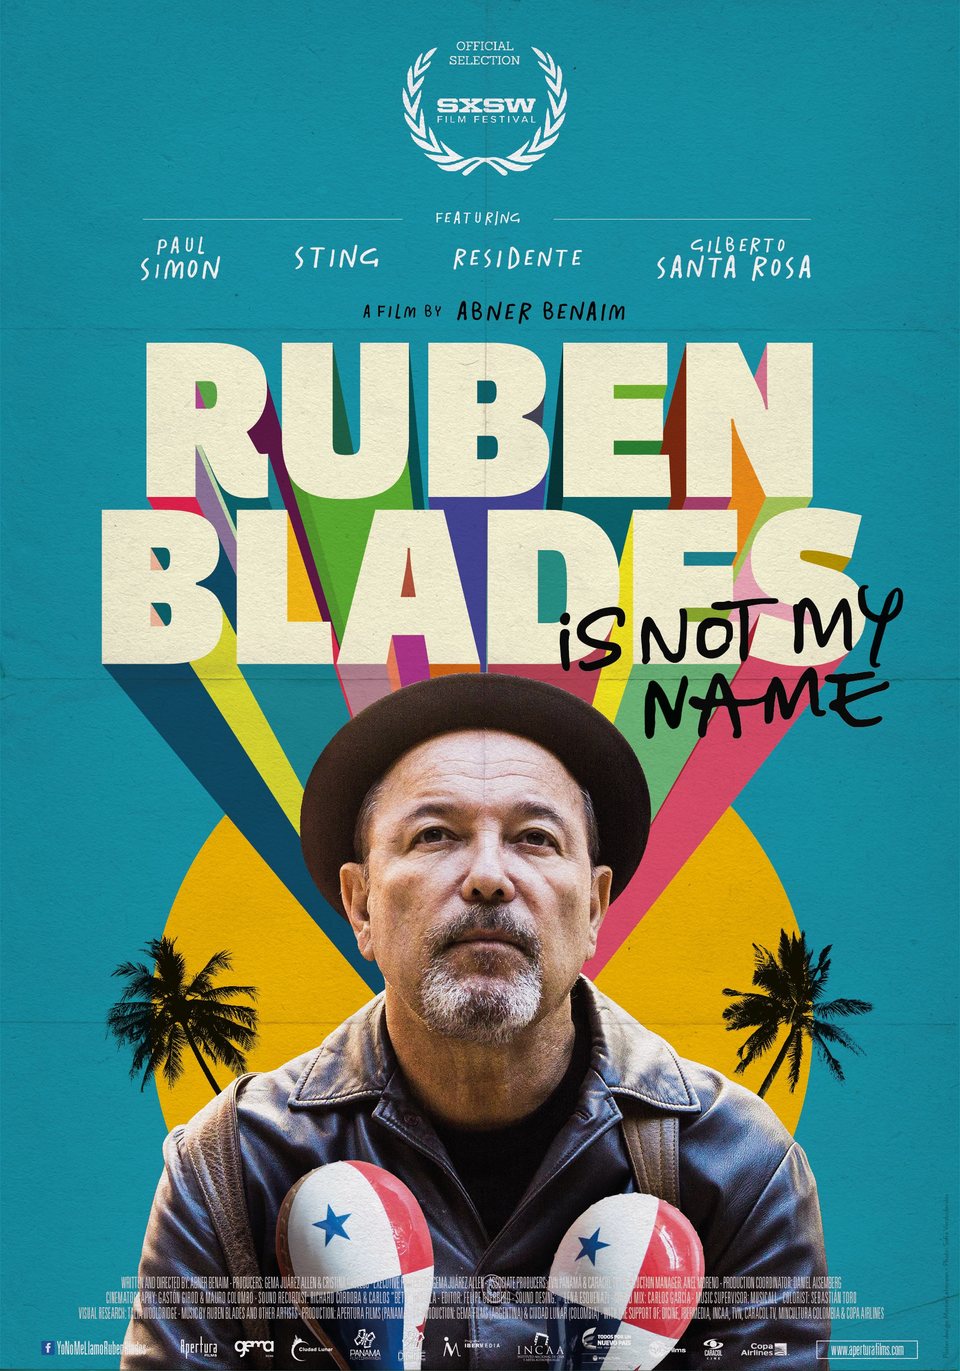 Cartel de Yo no me llamo Rubén Blades - Poster 'Ruben Blades Is Not My Name'